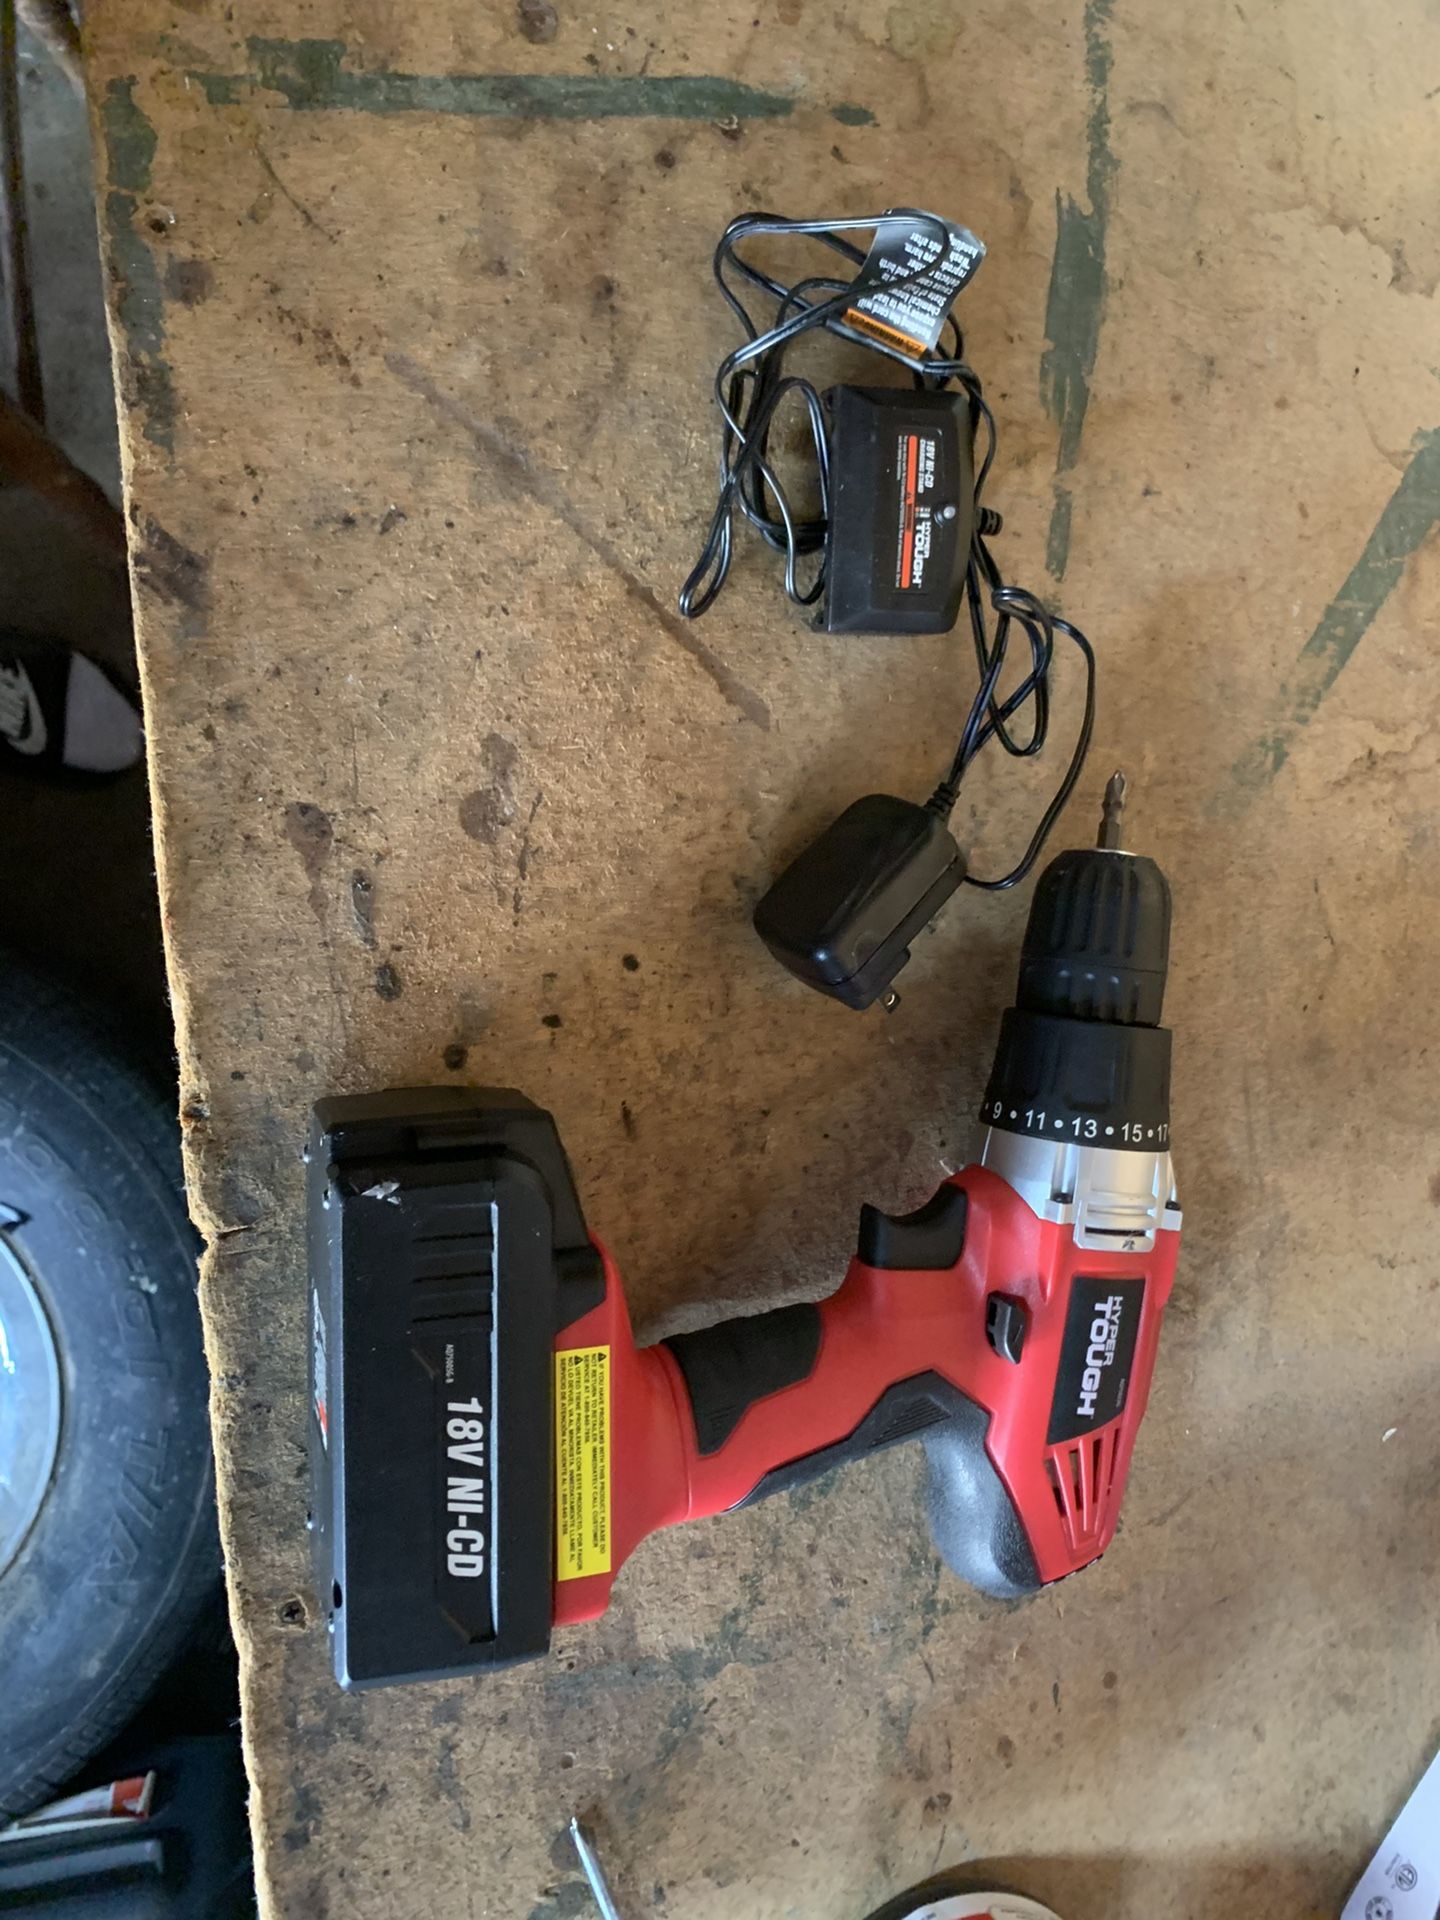 Hyper touch 18-volt cordless drill